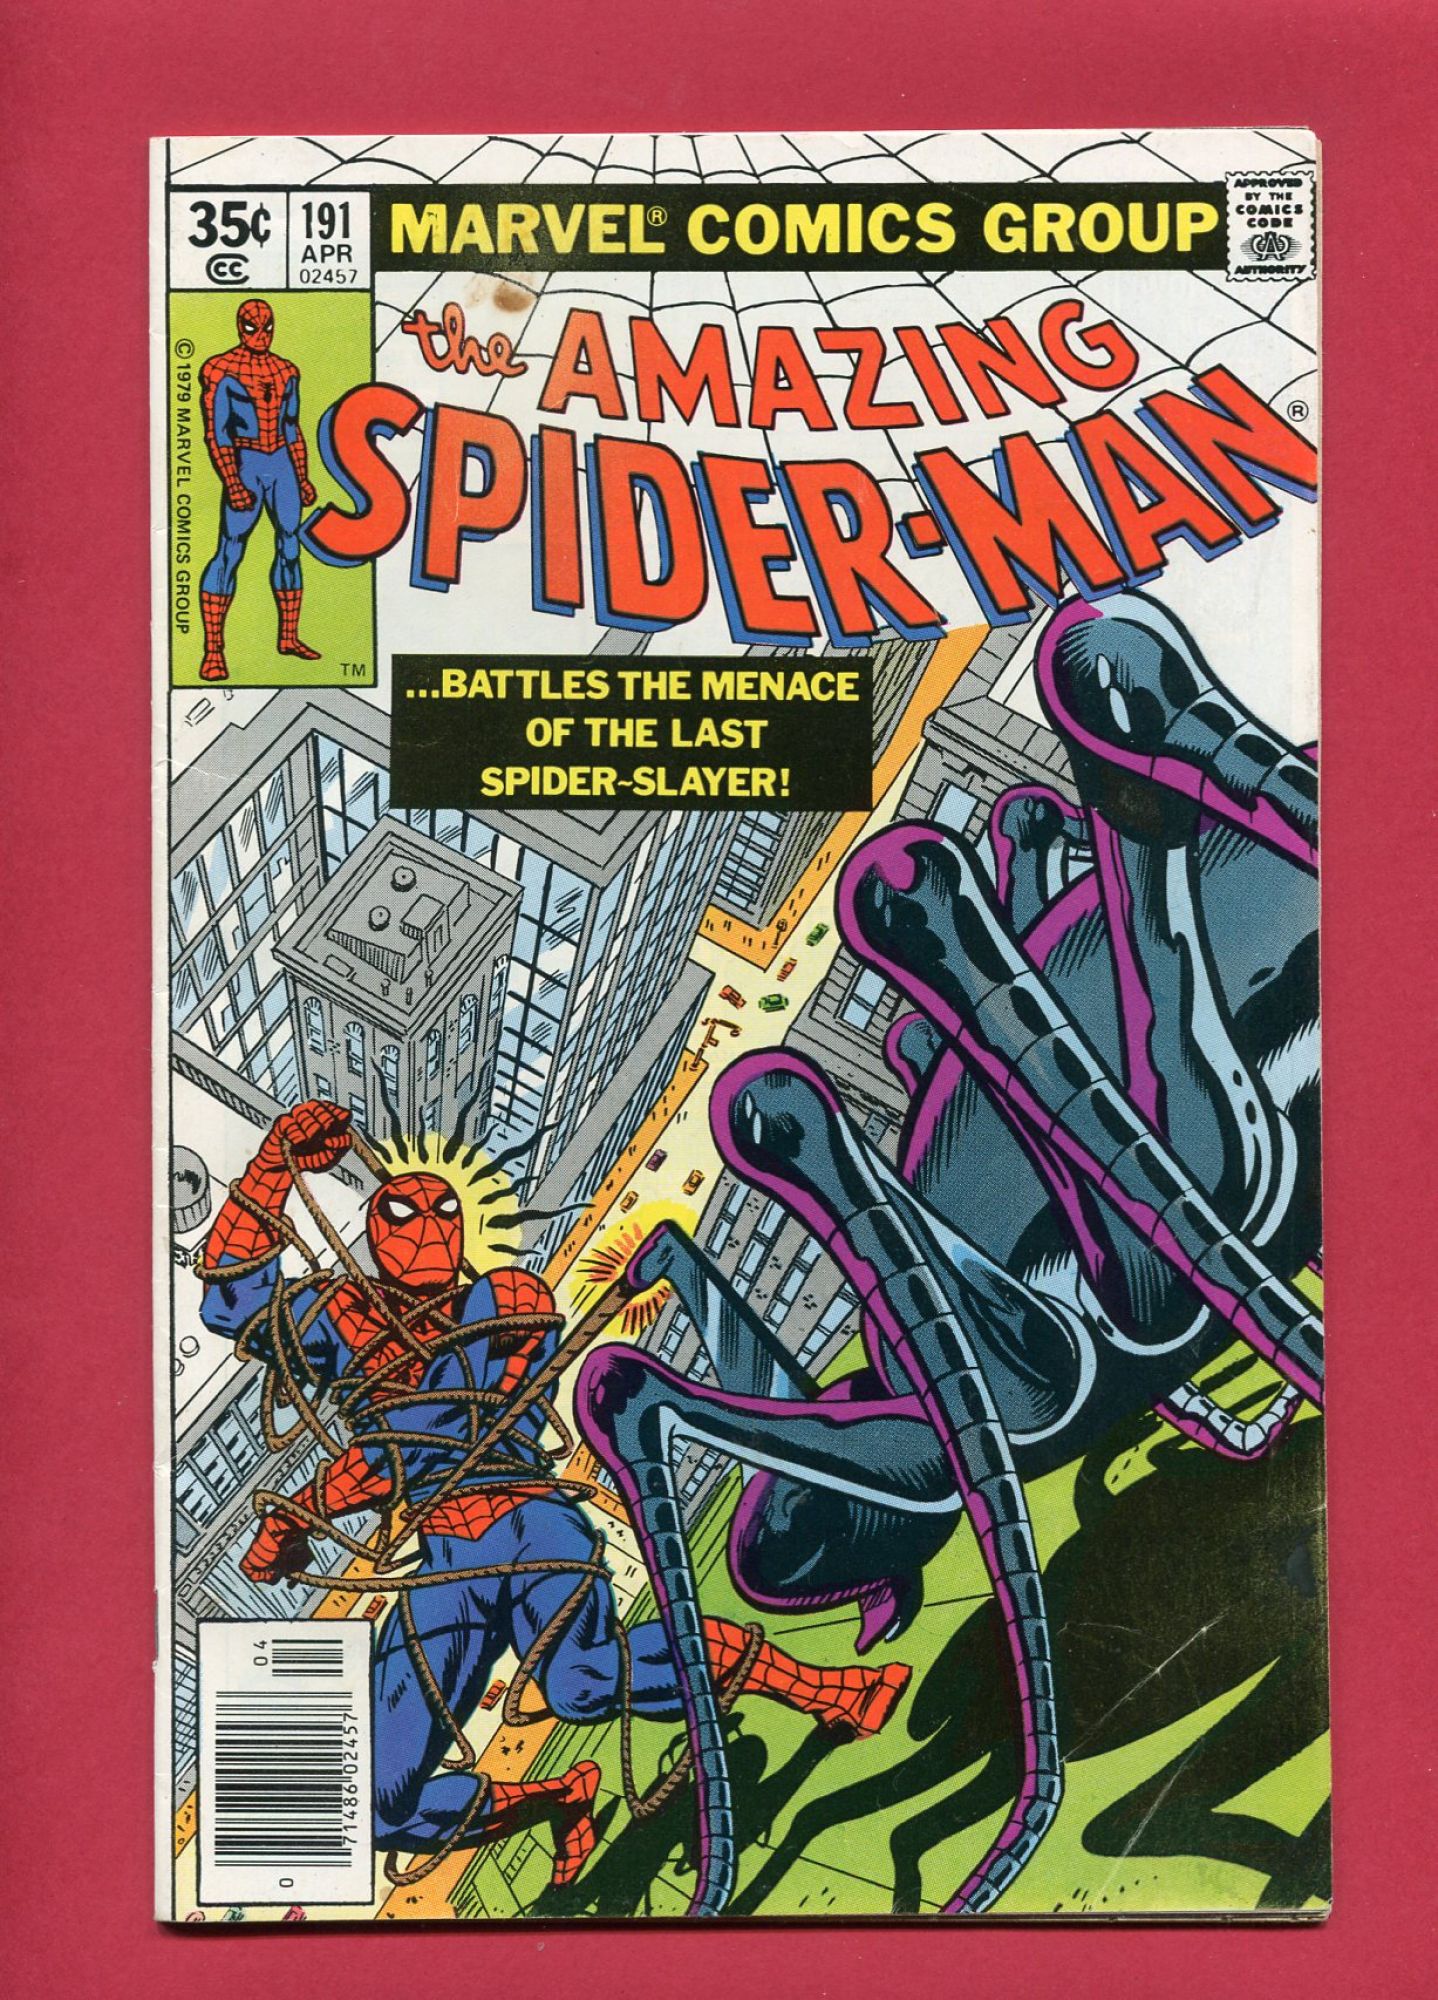 Amazing Spider-Man #191, Apr 1979, 6.5 FN+